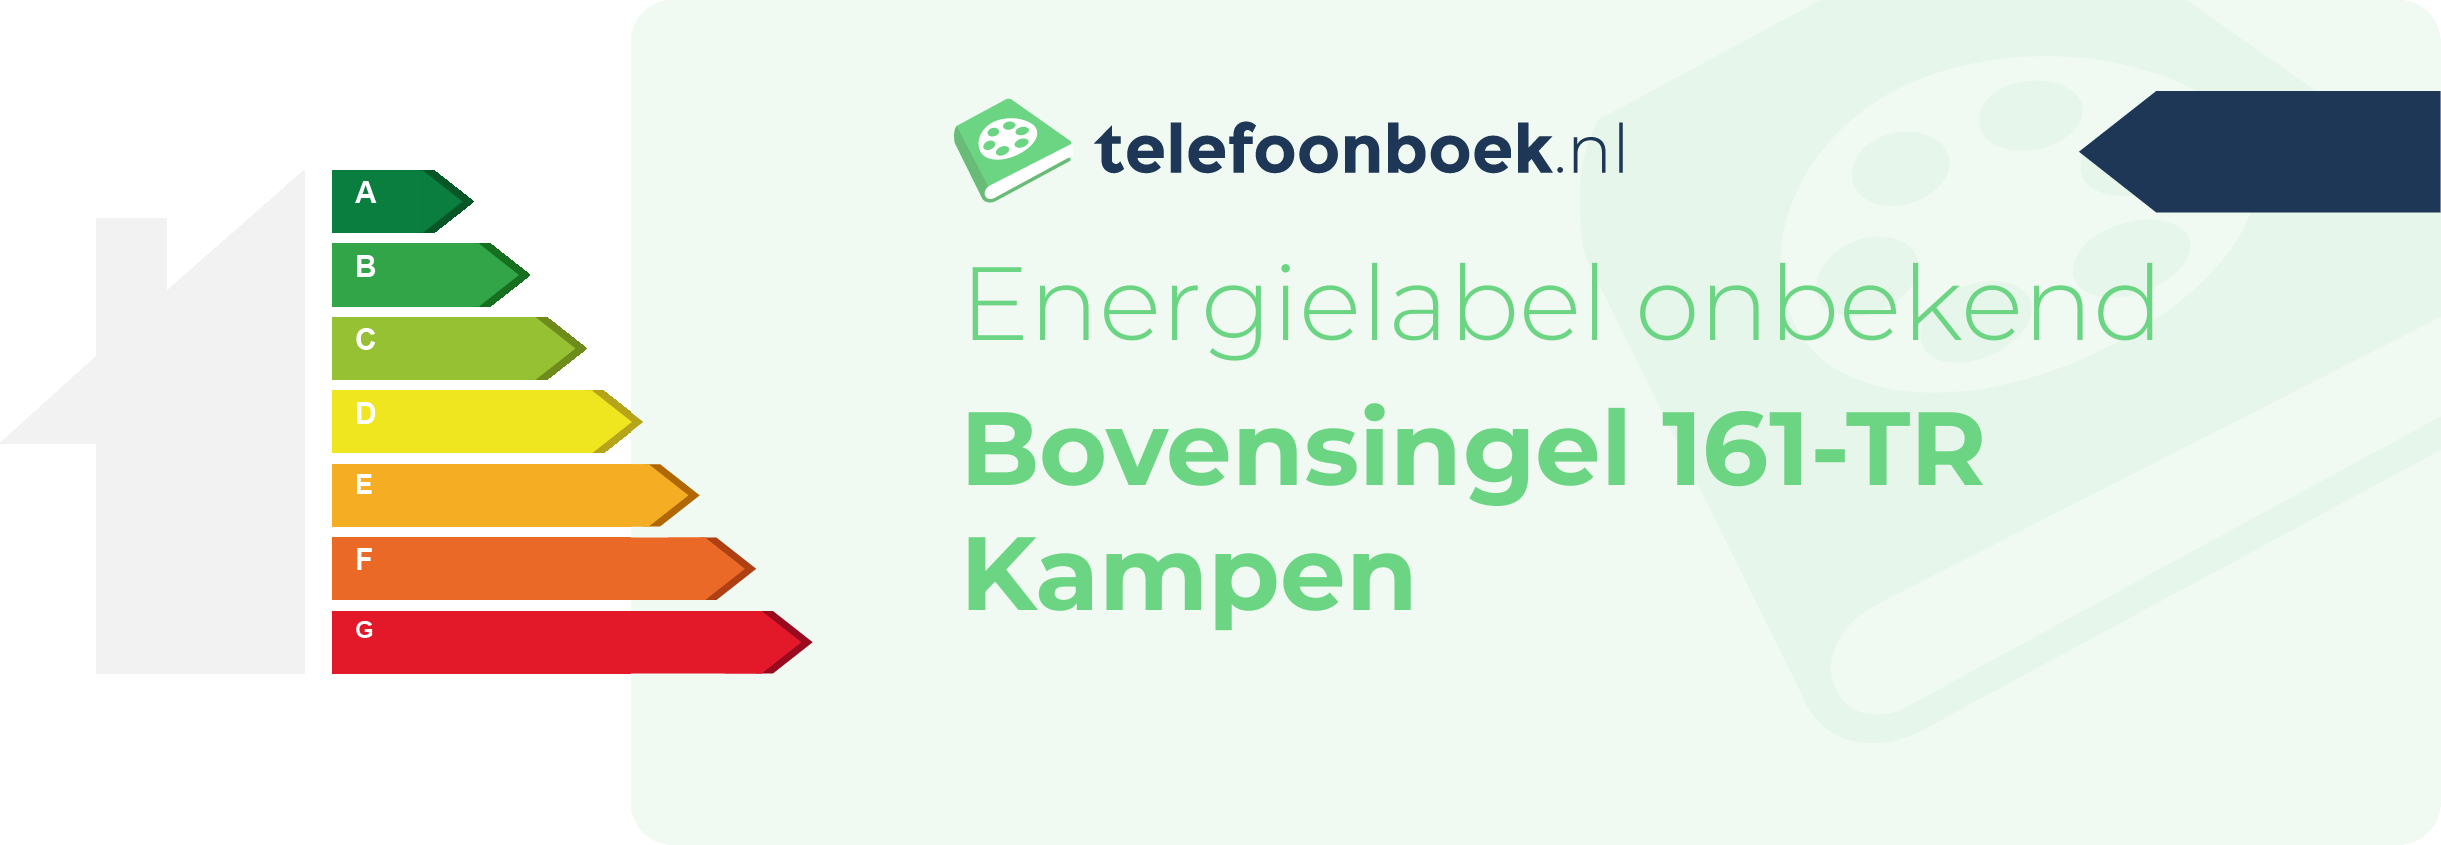 Energielabel Bovensingel 161-TR Kampen